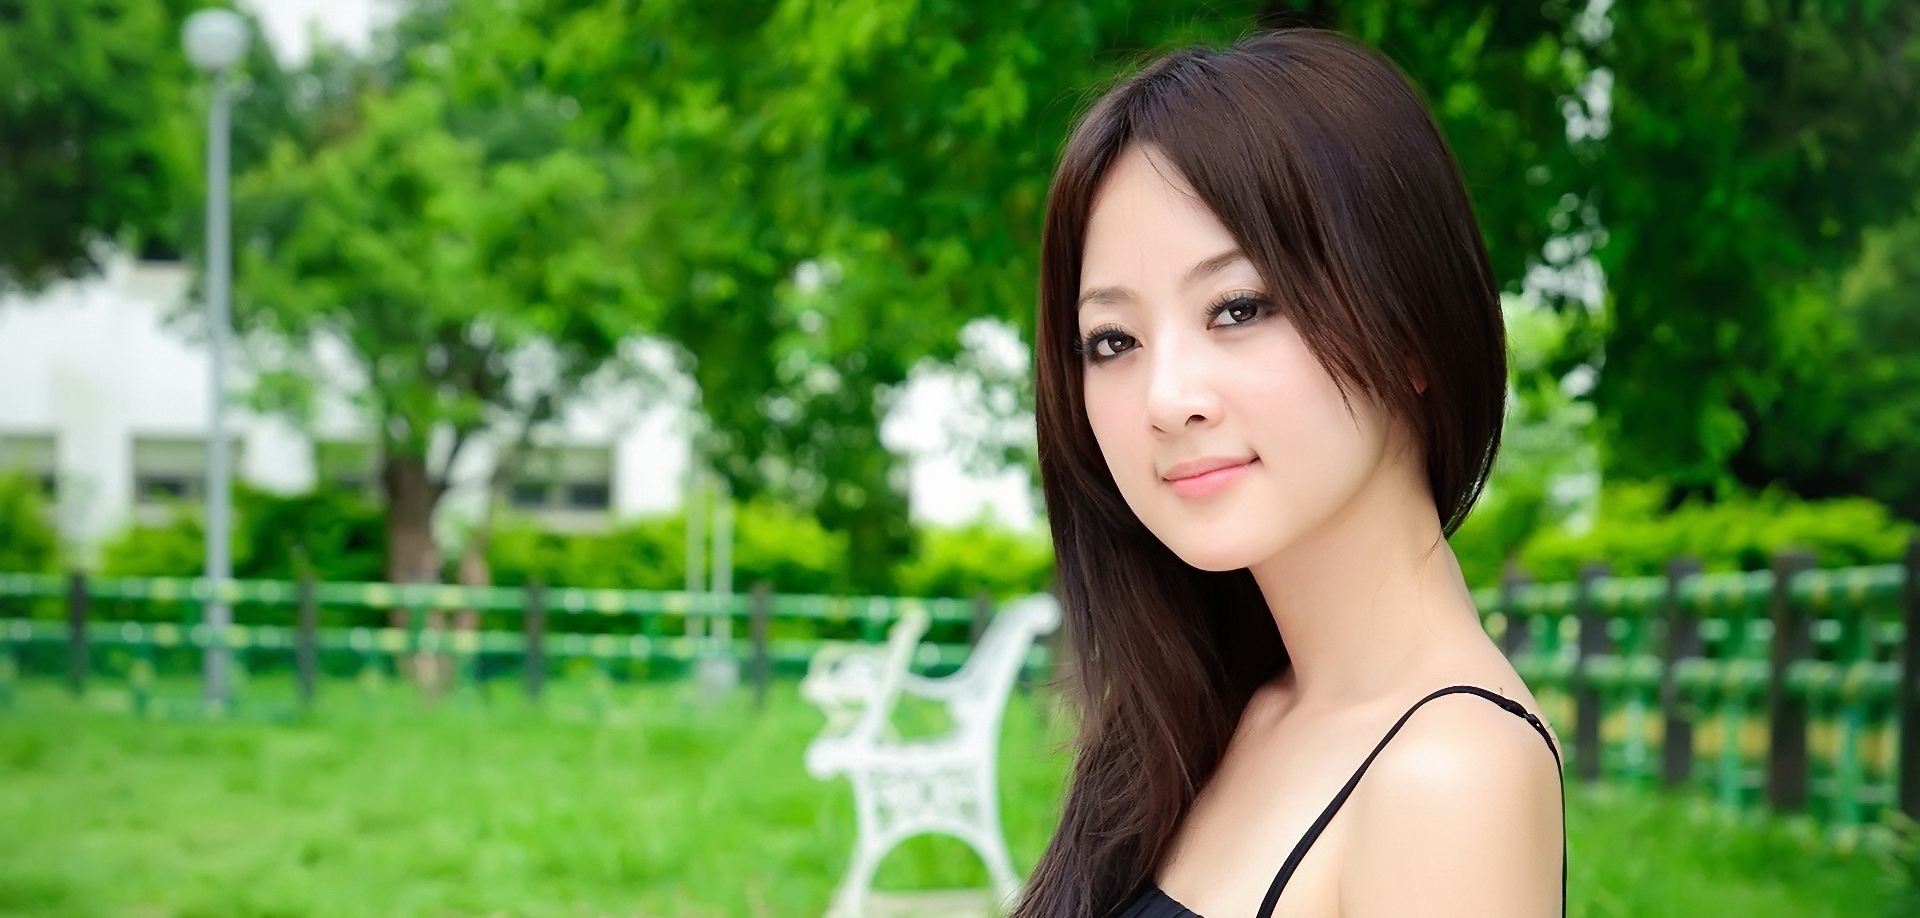 Your asia. Самые красивые азиатки 40/50лет. Азиатки за 40 лет. Single woman.